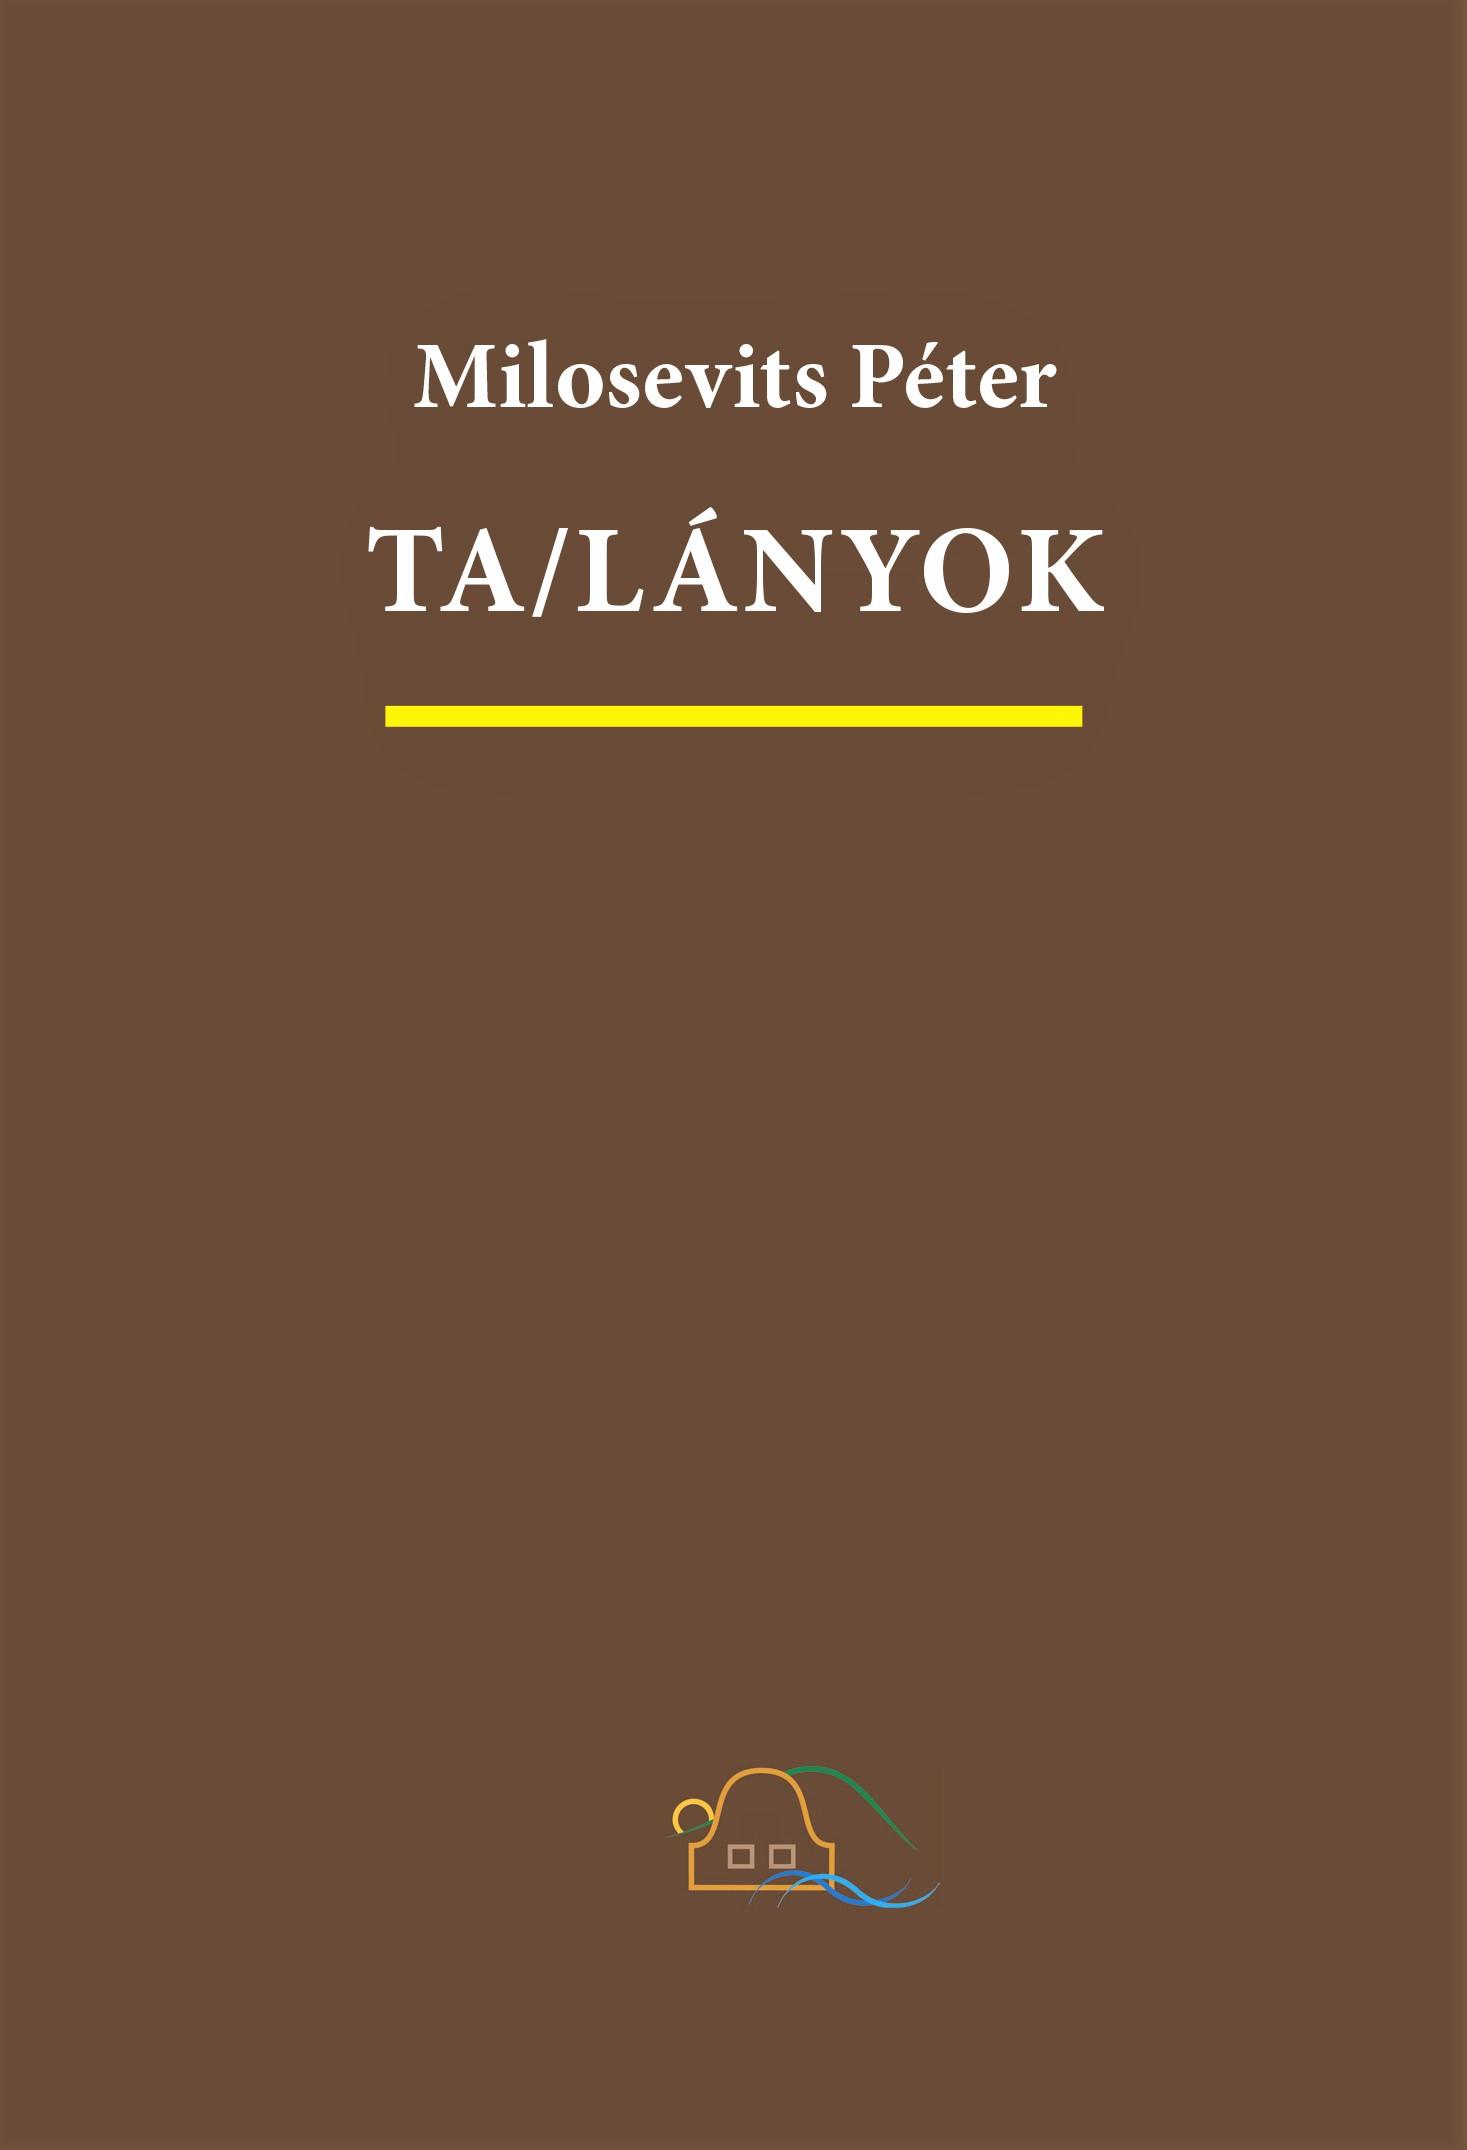 Milosevits Péter - Talányok. Igaz és hamis történetek